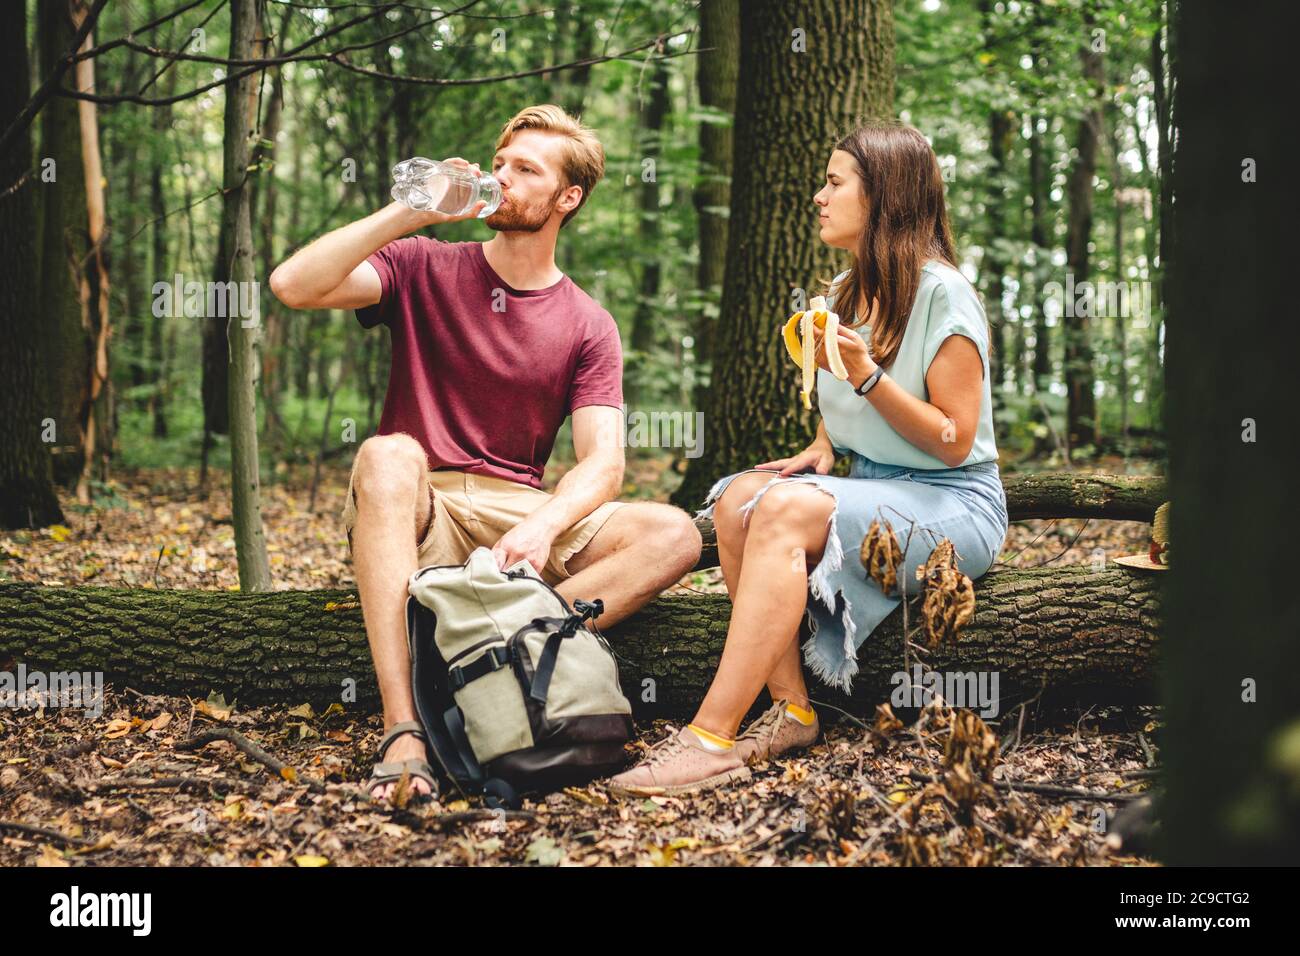 Die Leute essen Banane und trinken Wasser aus der Plastikflasche, während sie auf Holz sitzen. Paar Wanderer machen Pause für Essen und Trinken im Wald auf gefallen Stockfoto